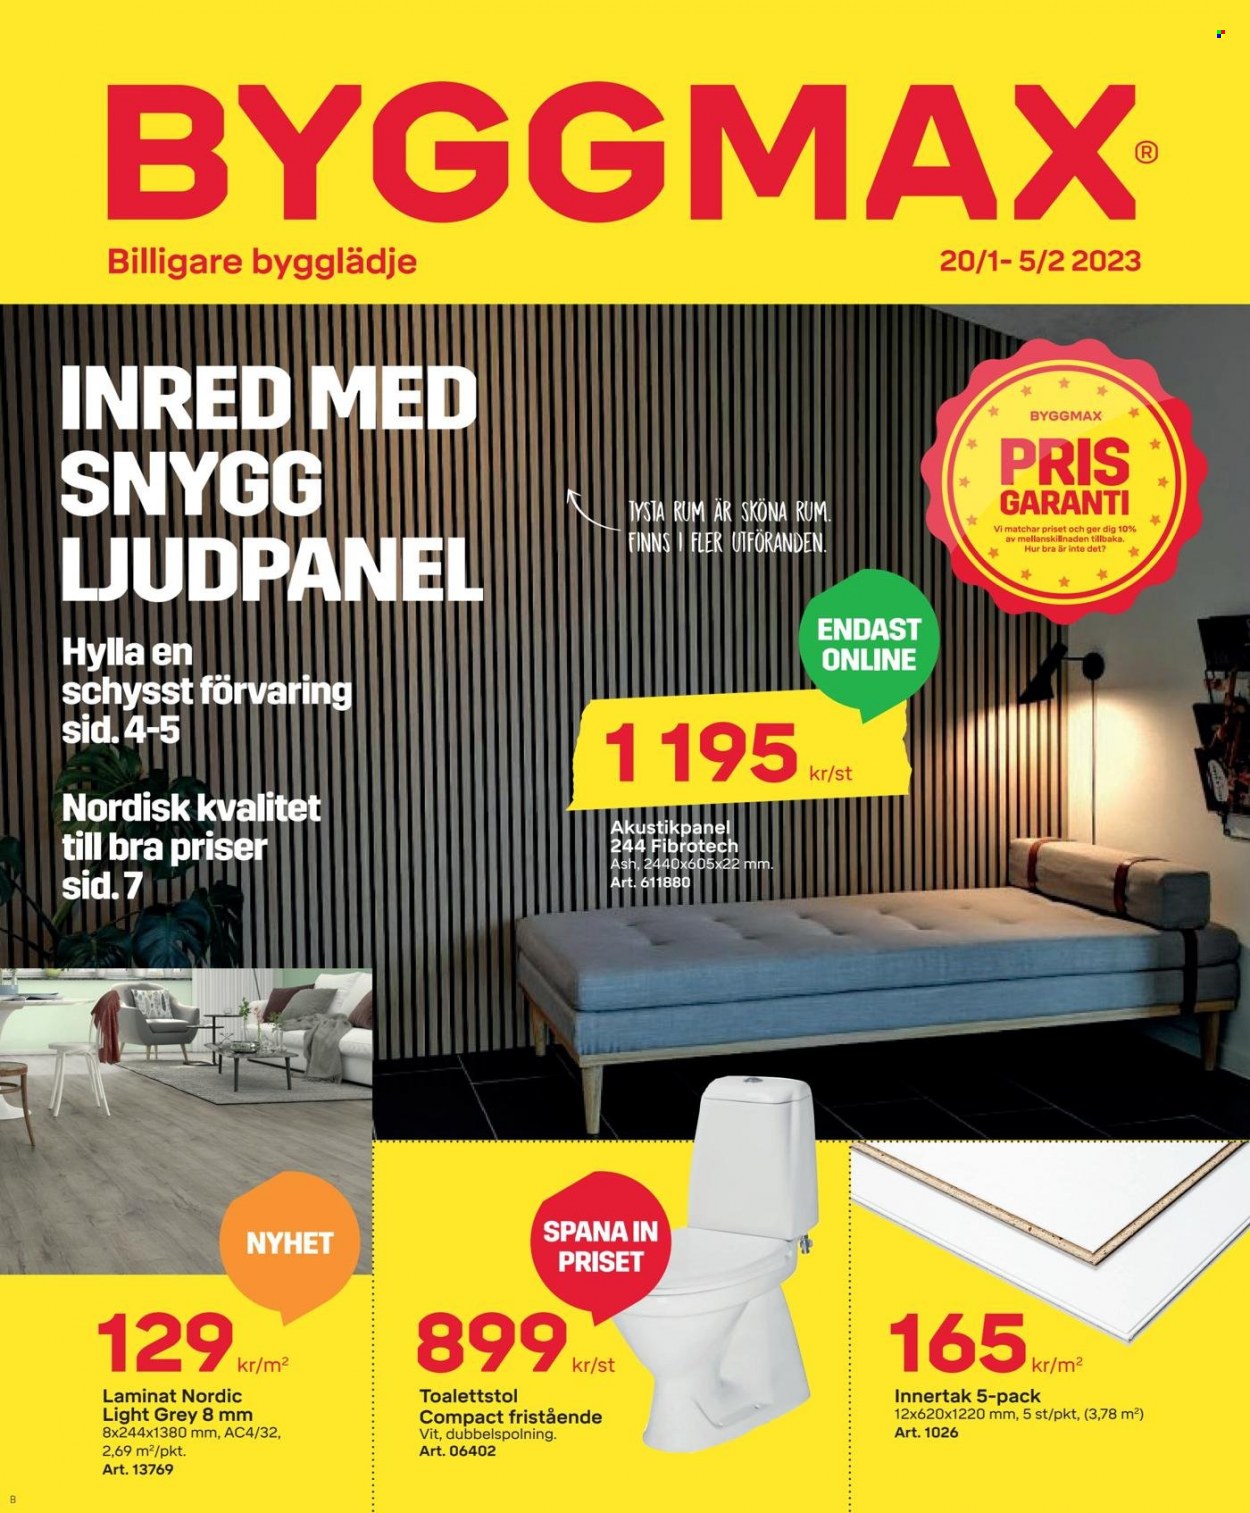 ByggMax reklamblad - 20/1 2023 - 5/2 2023 - varor från reklamblad - Hylla, toalettstol. Sida 1.